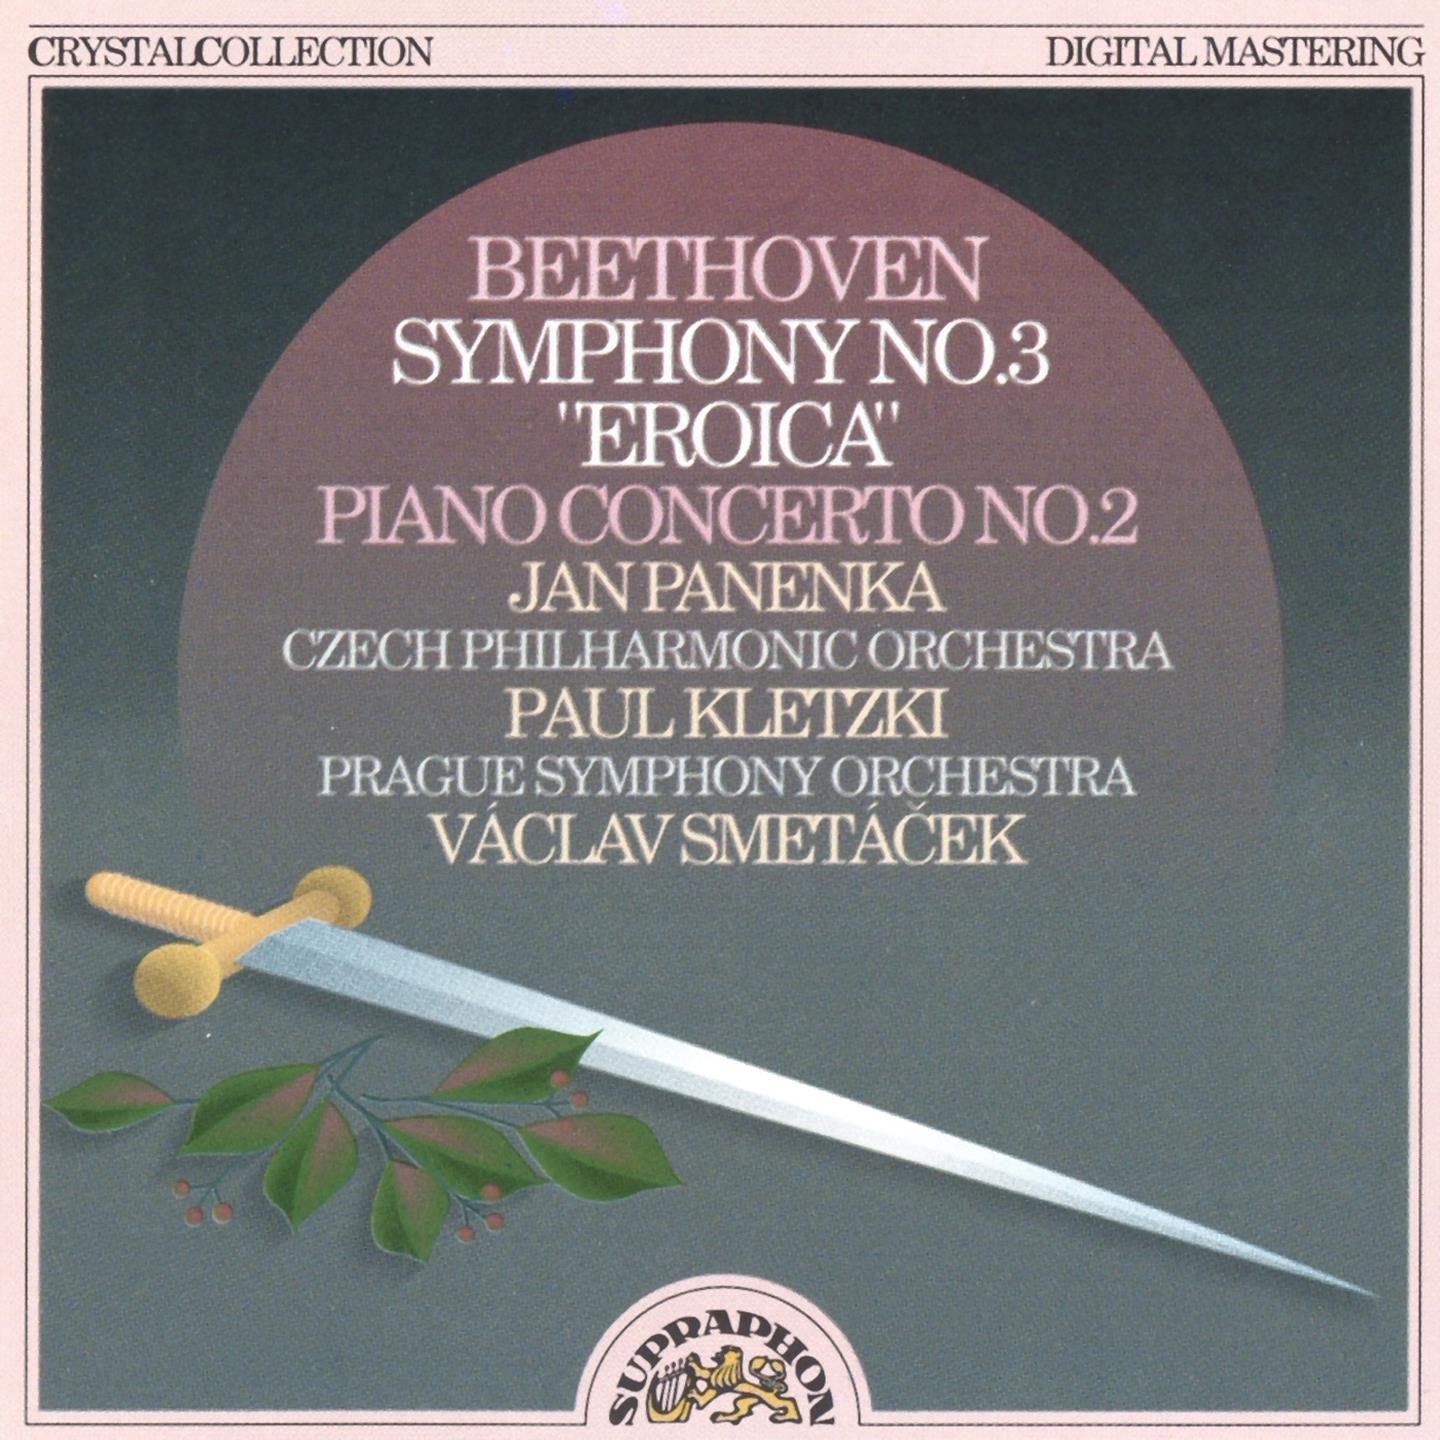 Piano Concerto No. 2 in B-Flat Major, Op. 19, .: II. Adagio